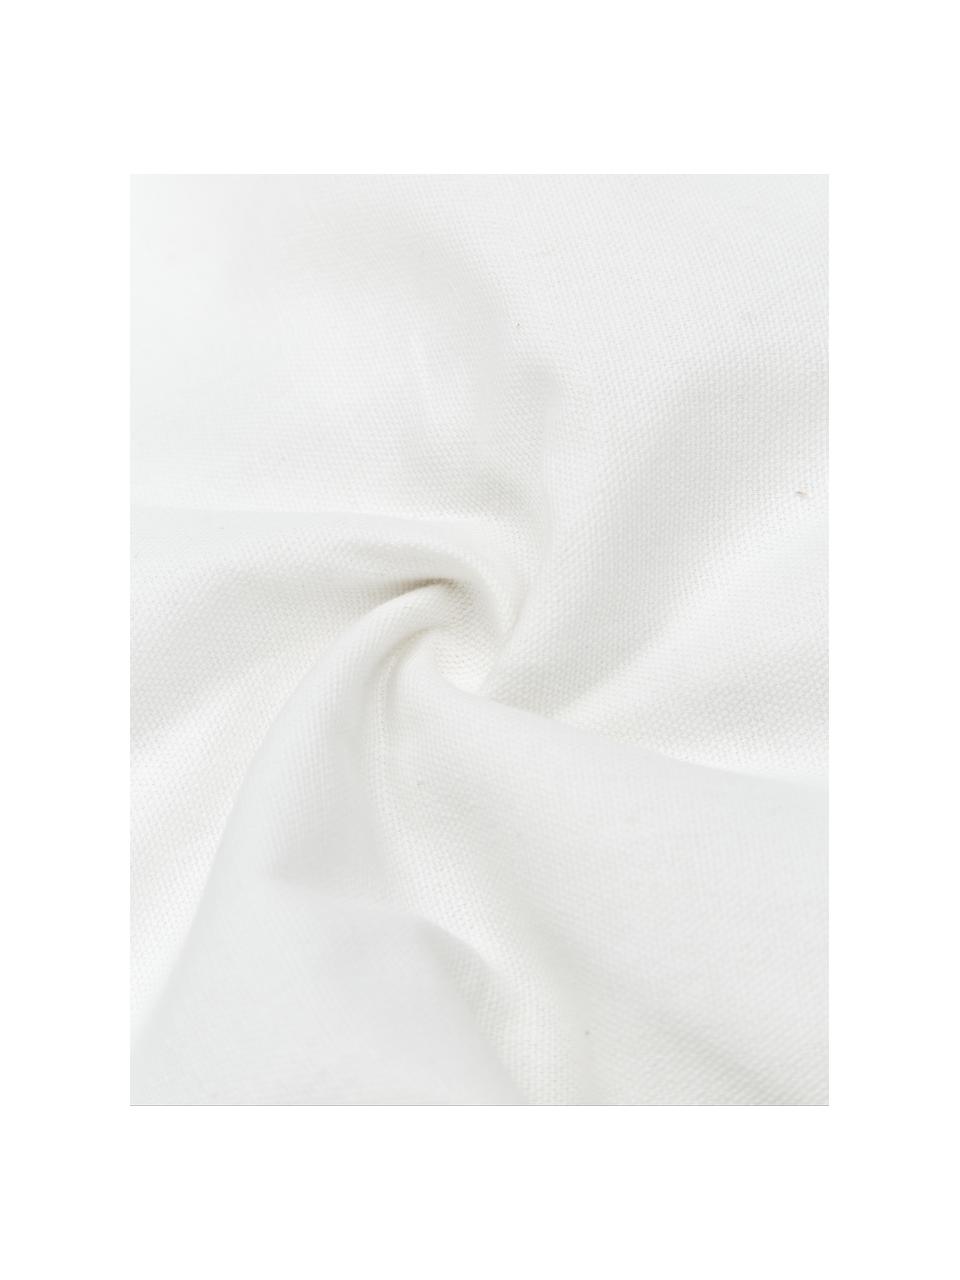 Funda de cojín de algodón con borlas Viale, 100% algodón, Blanco, beige, An 40 x L 60 cm